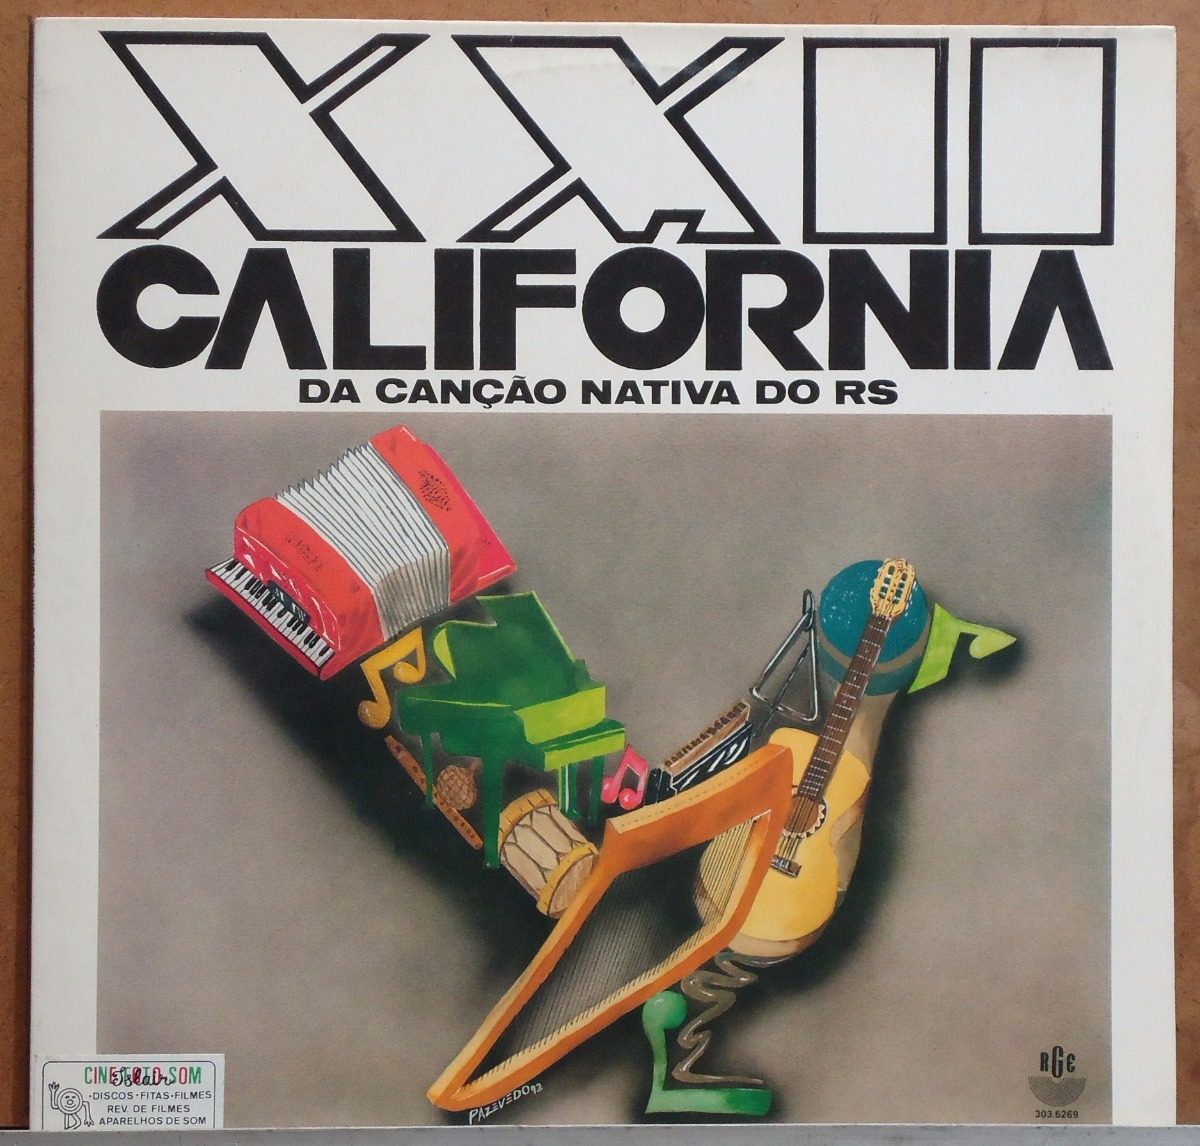 LP 22ª Califórnia da Canção Nativa